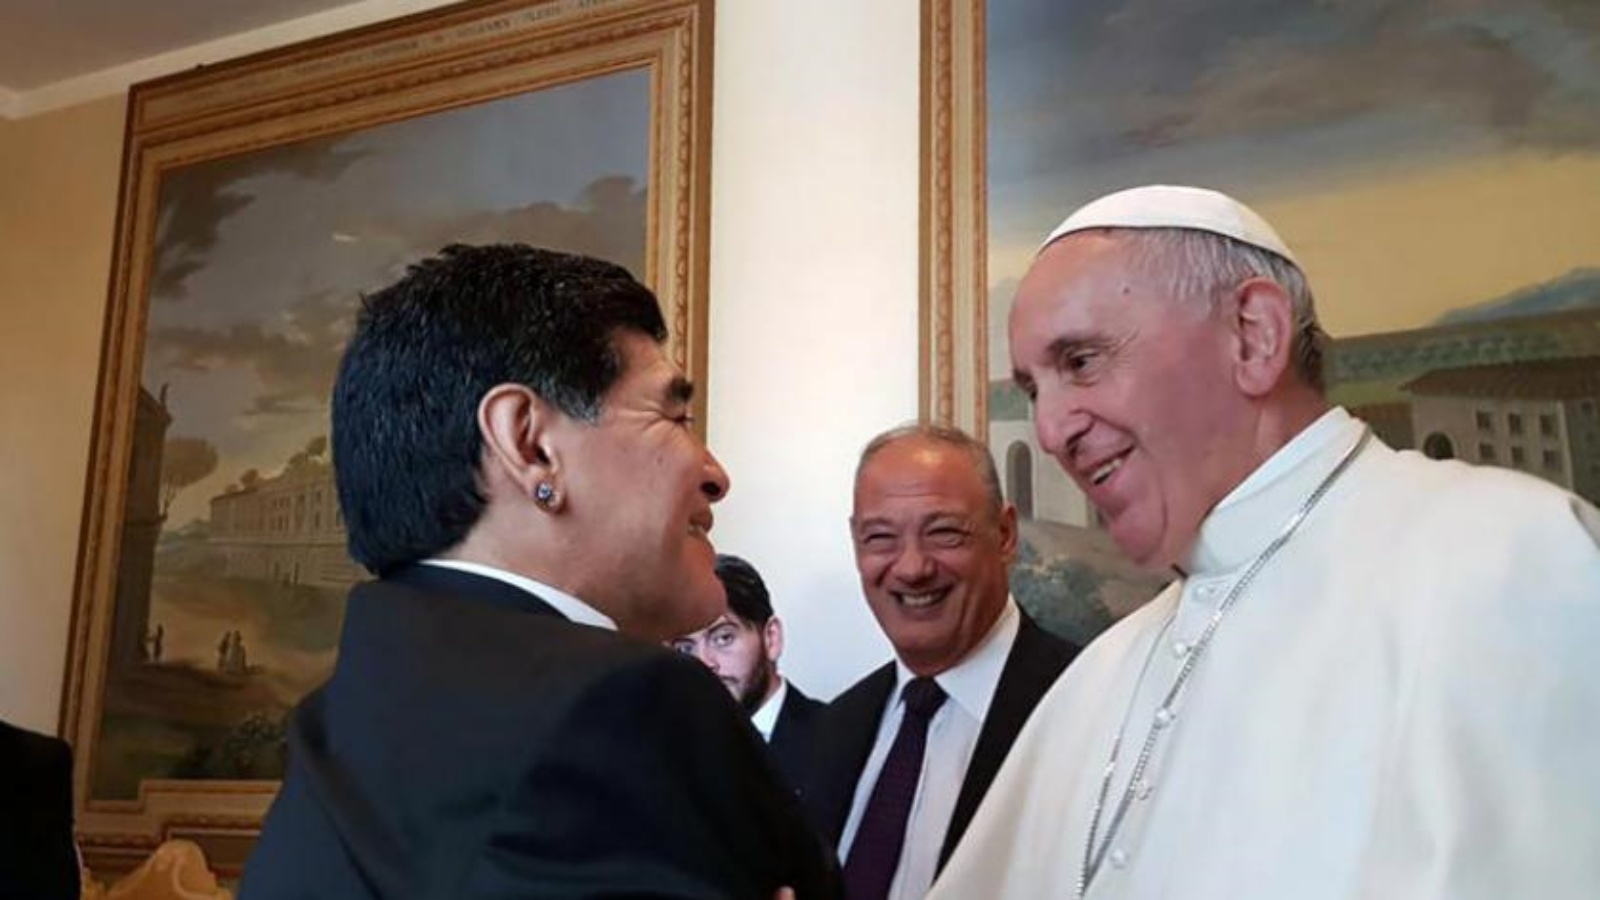 البابا فرنسيس وهو يحيي لاعب كرة القدم الأرجنتيني الراحل دييغو مارادونا خلال زيارته الفاتيكان في 12 أكتوبر 2016 (أ.ف.ب)